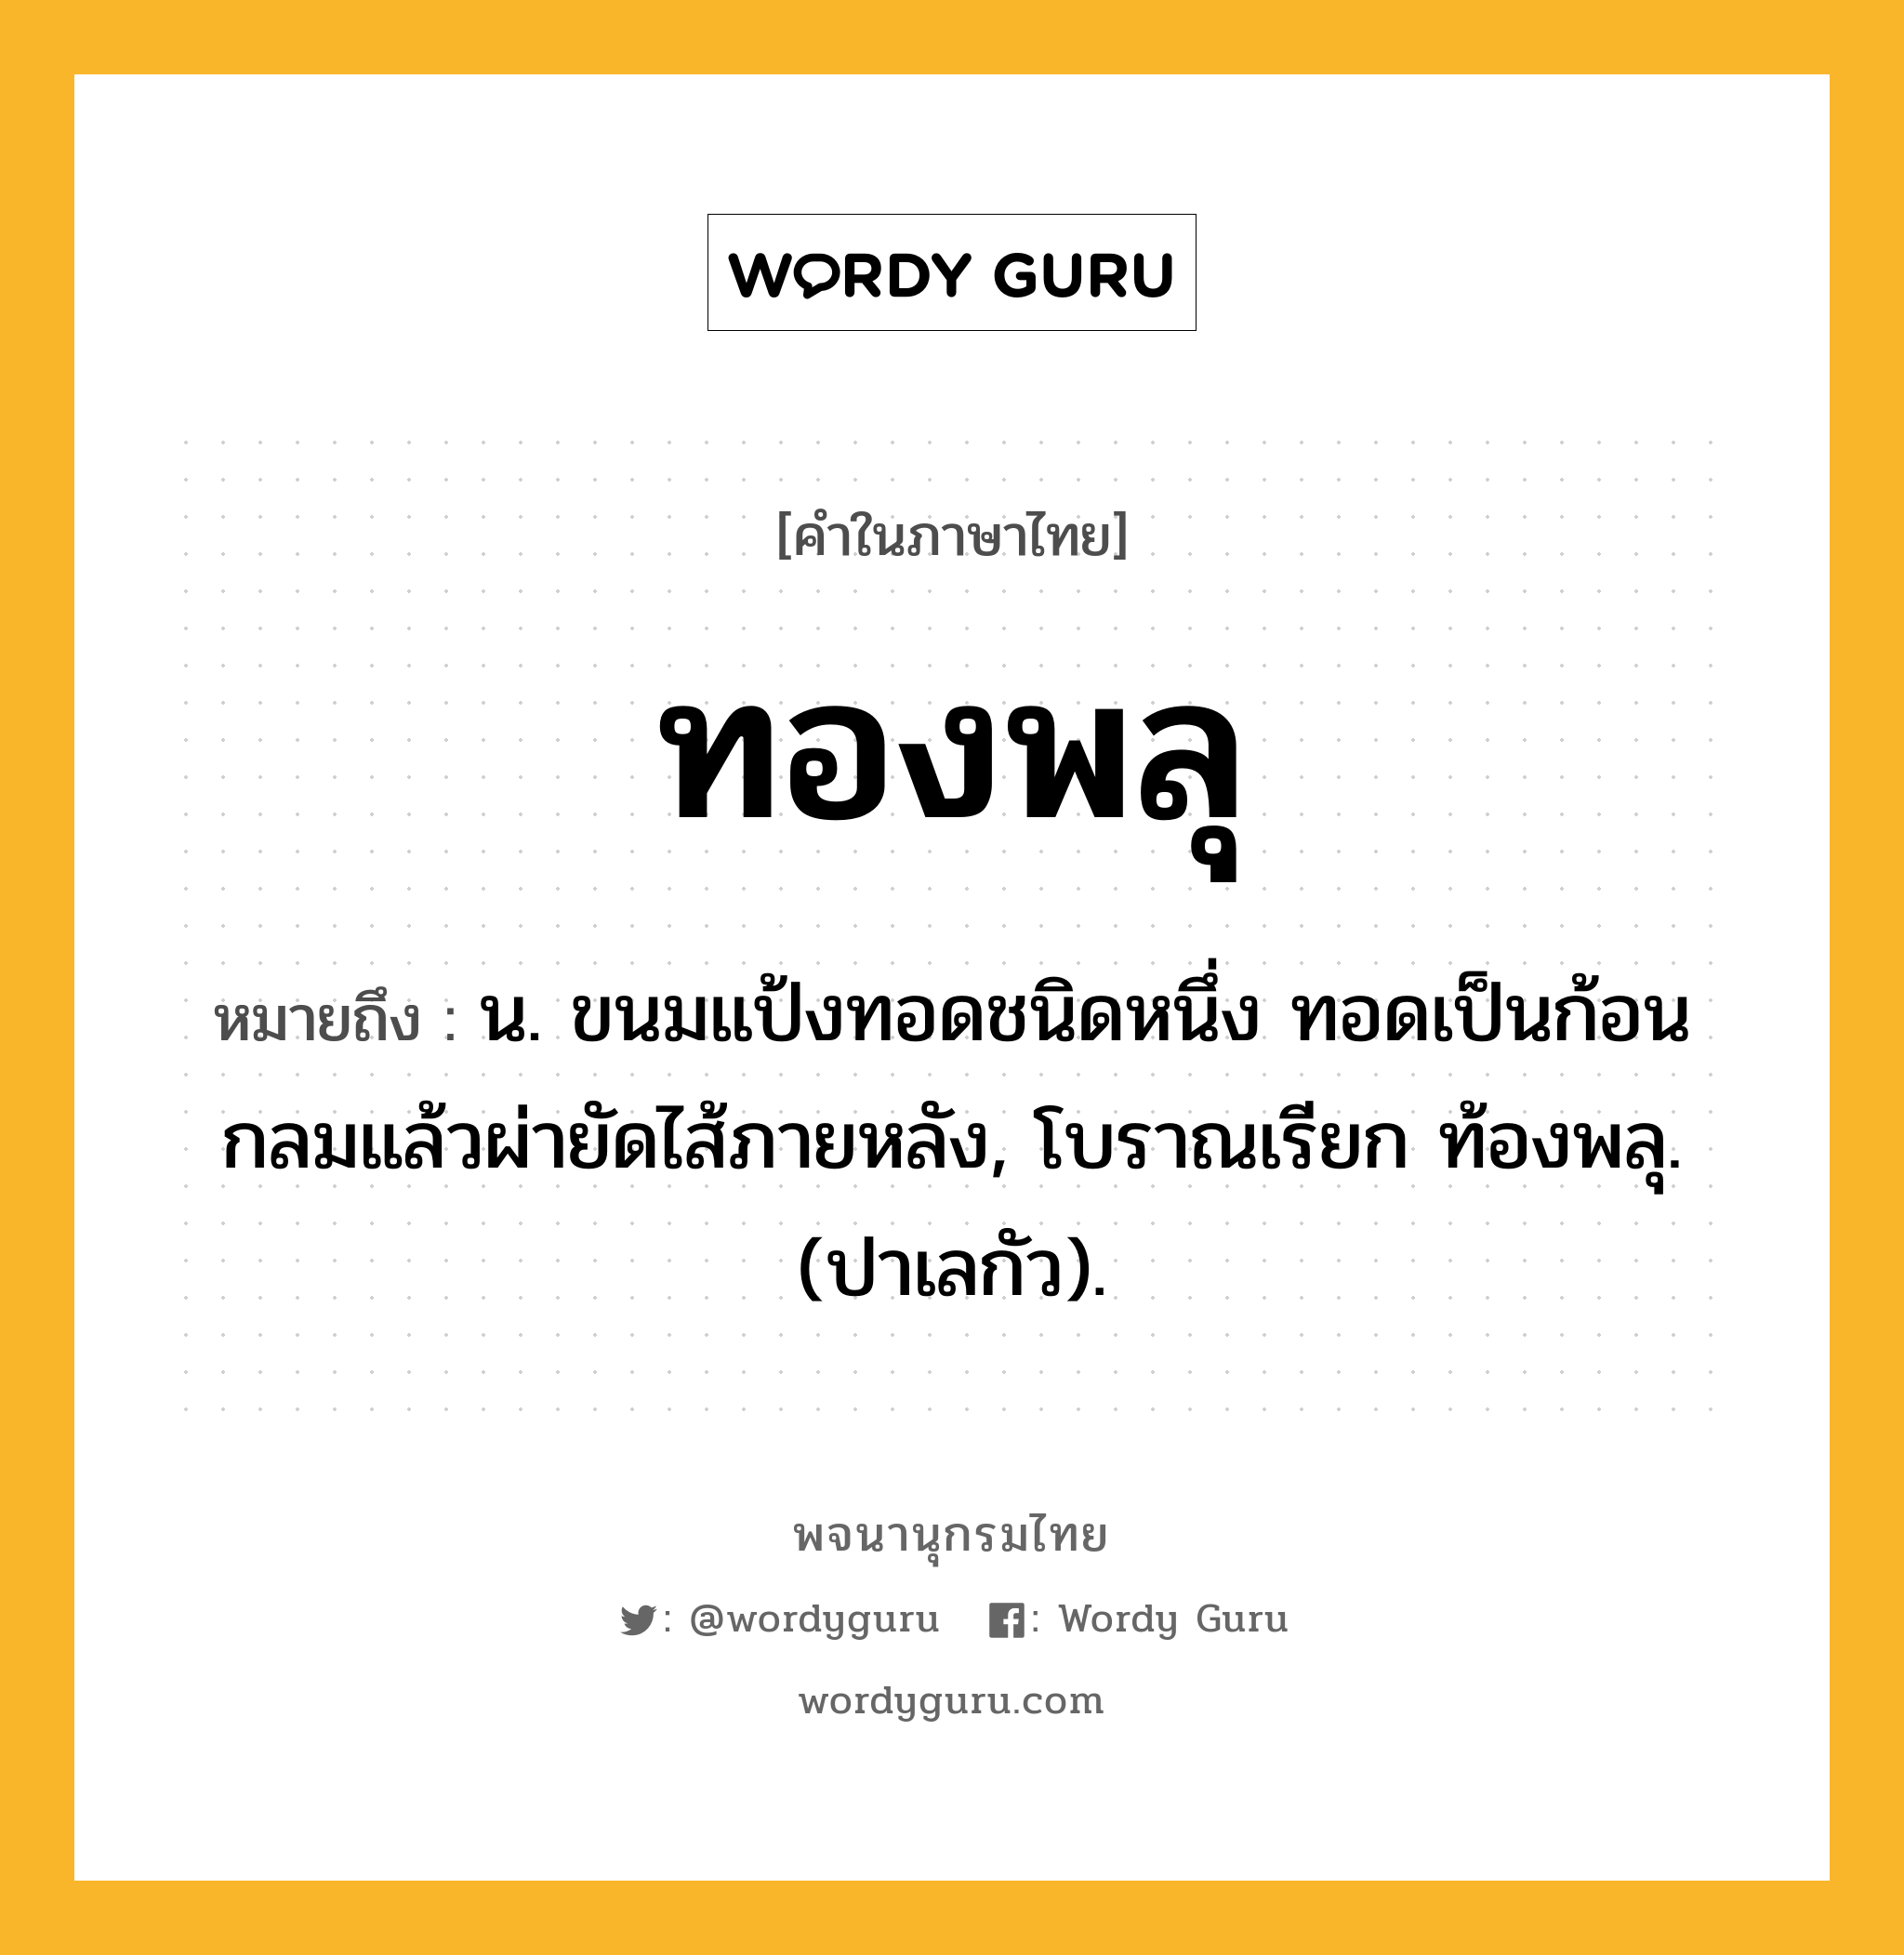 ทองพลุ หมายถึงอะไร?, คำในภาษาไทย ทองพลุ หมายถึง น. ขนมแป้งทอดชนิดหนึ่ง ทอดเป็นก้อนกลมแล้วผ่ายัดไส้ภายหลัง, โบราณเรียก ท้องพลุ. (ปาเลกัว).